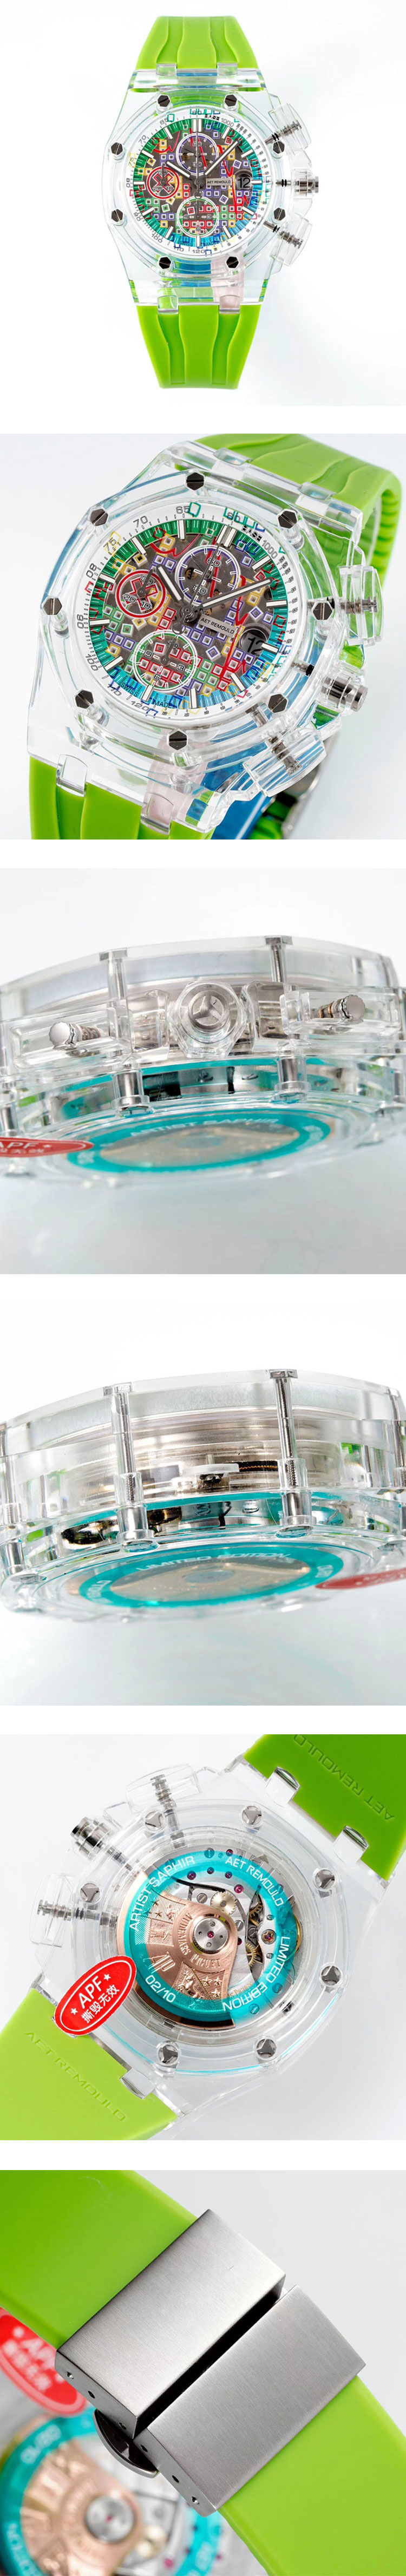 AET REMOULD 最高級のオーデマピゲスーパーコピー時計 ロイヤル オーク オフショア クロノグラフ APF製新作掲載